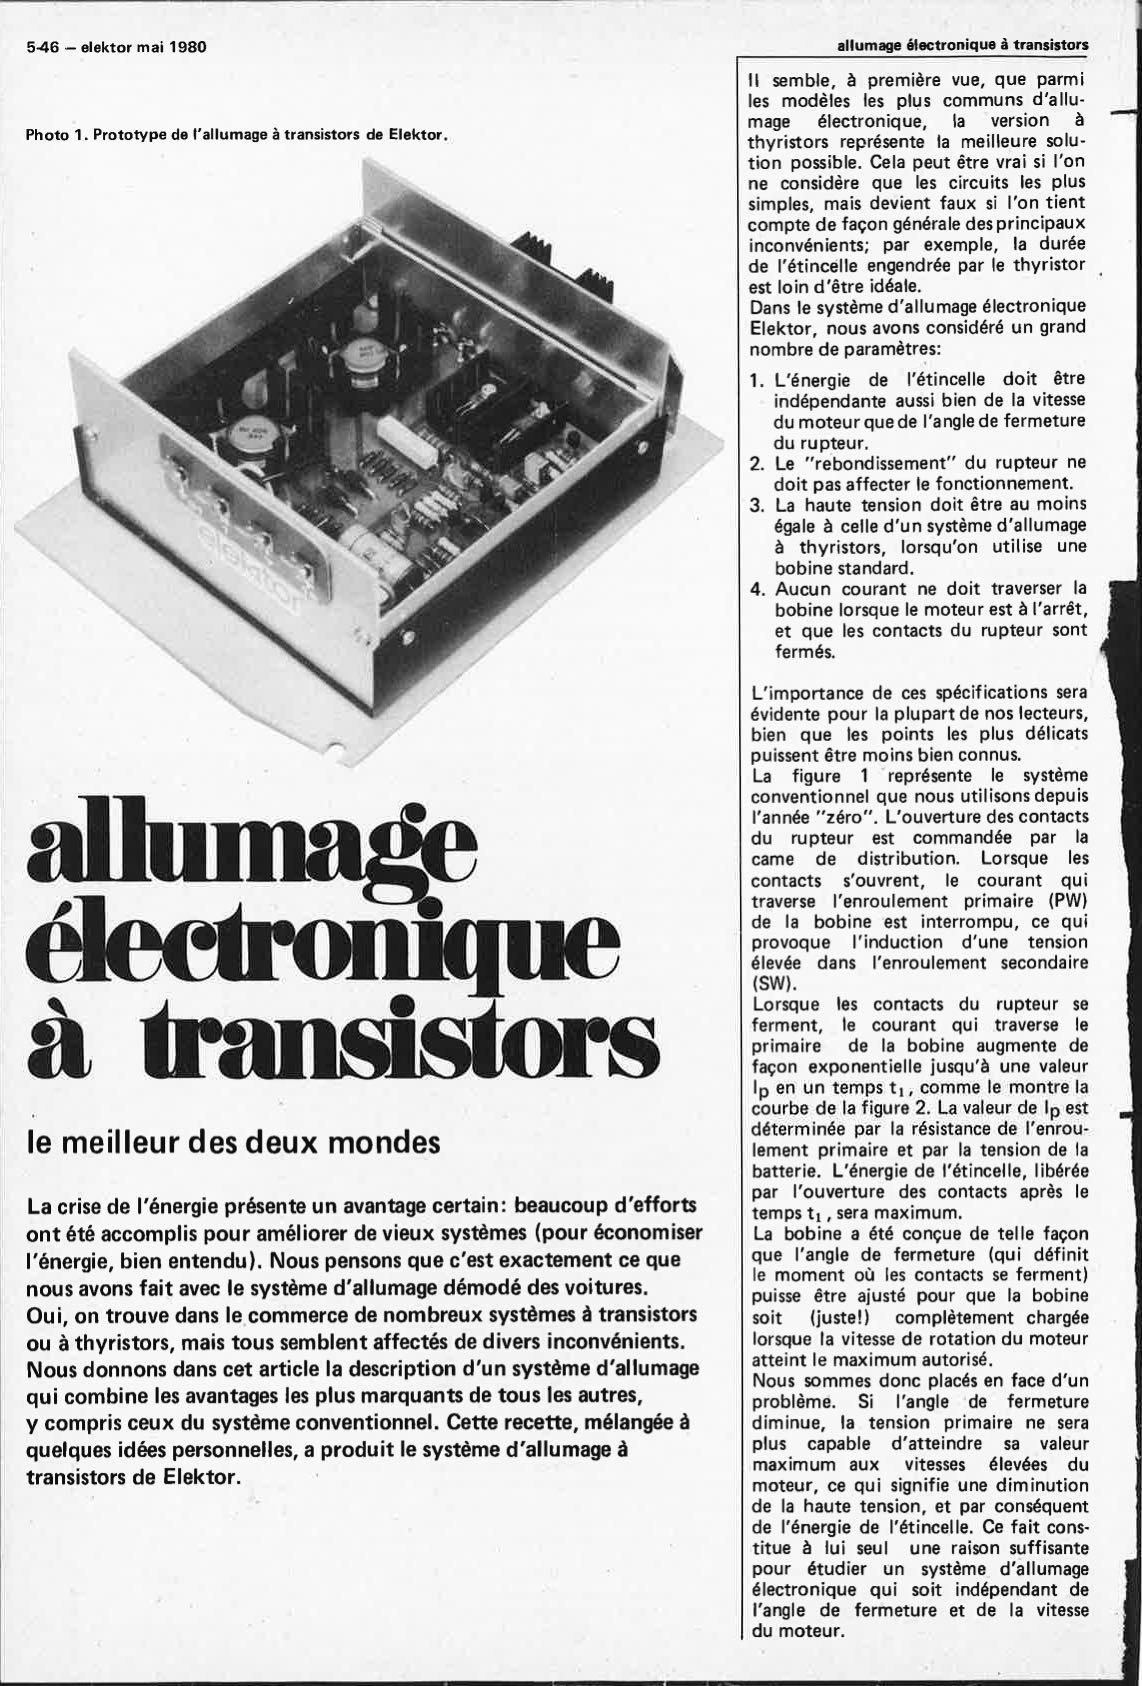 Allumage électronique à transistors